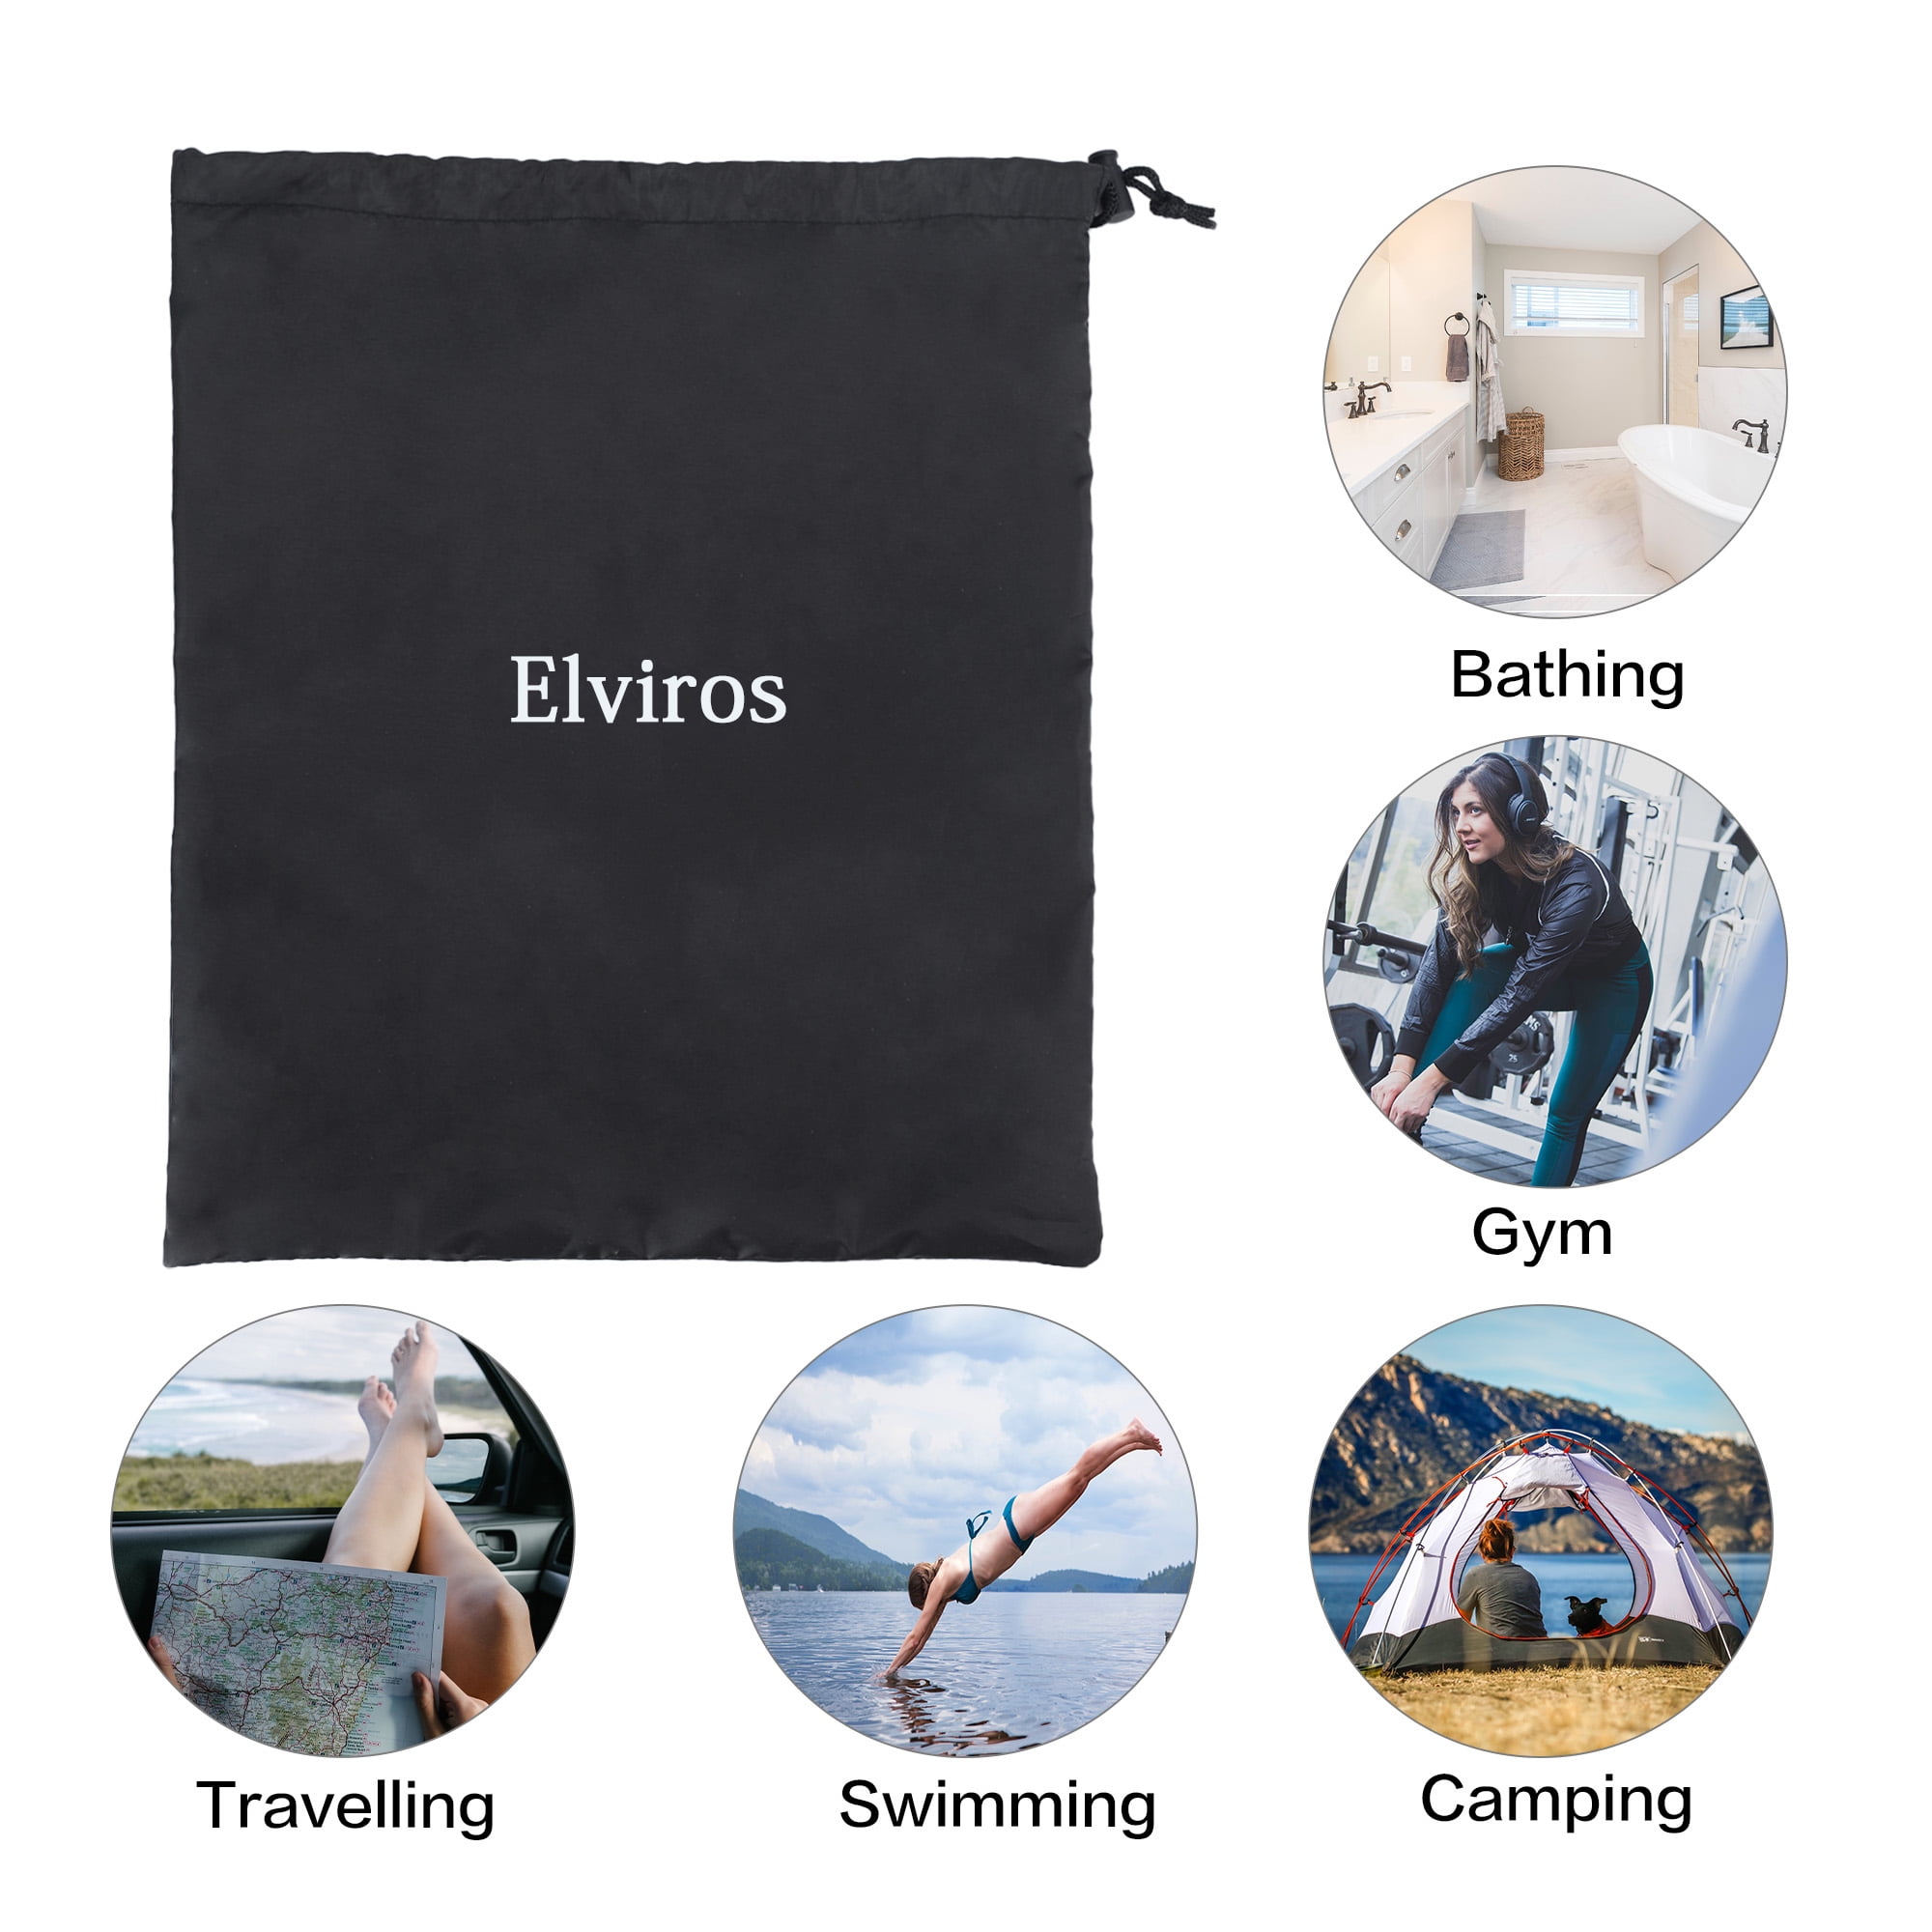 Elviros Toiletry Bag for Men, Large Travel Shaving Dopp Kit Water